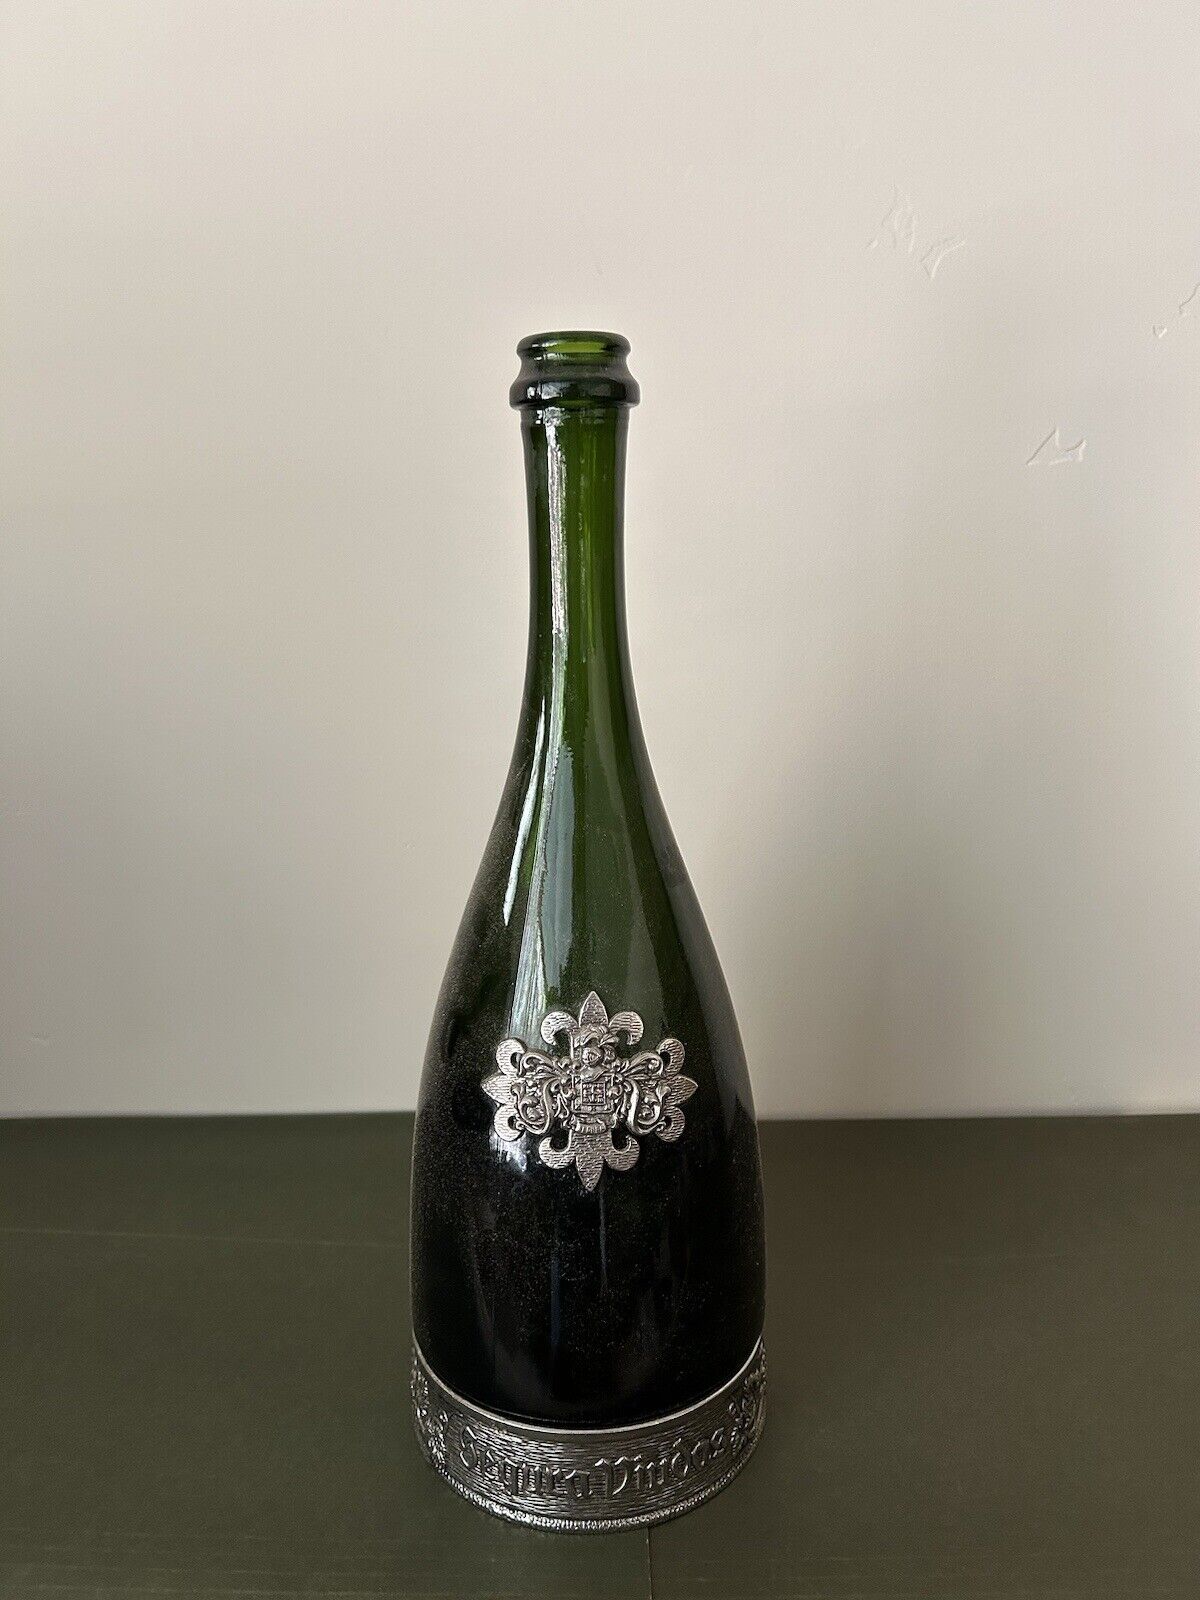 Vintage Segura Viudas Green Bottle w/ Pewter Base and Decor